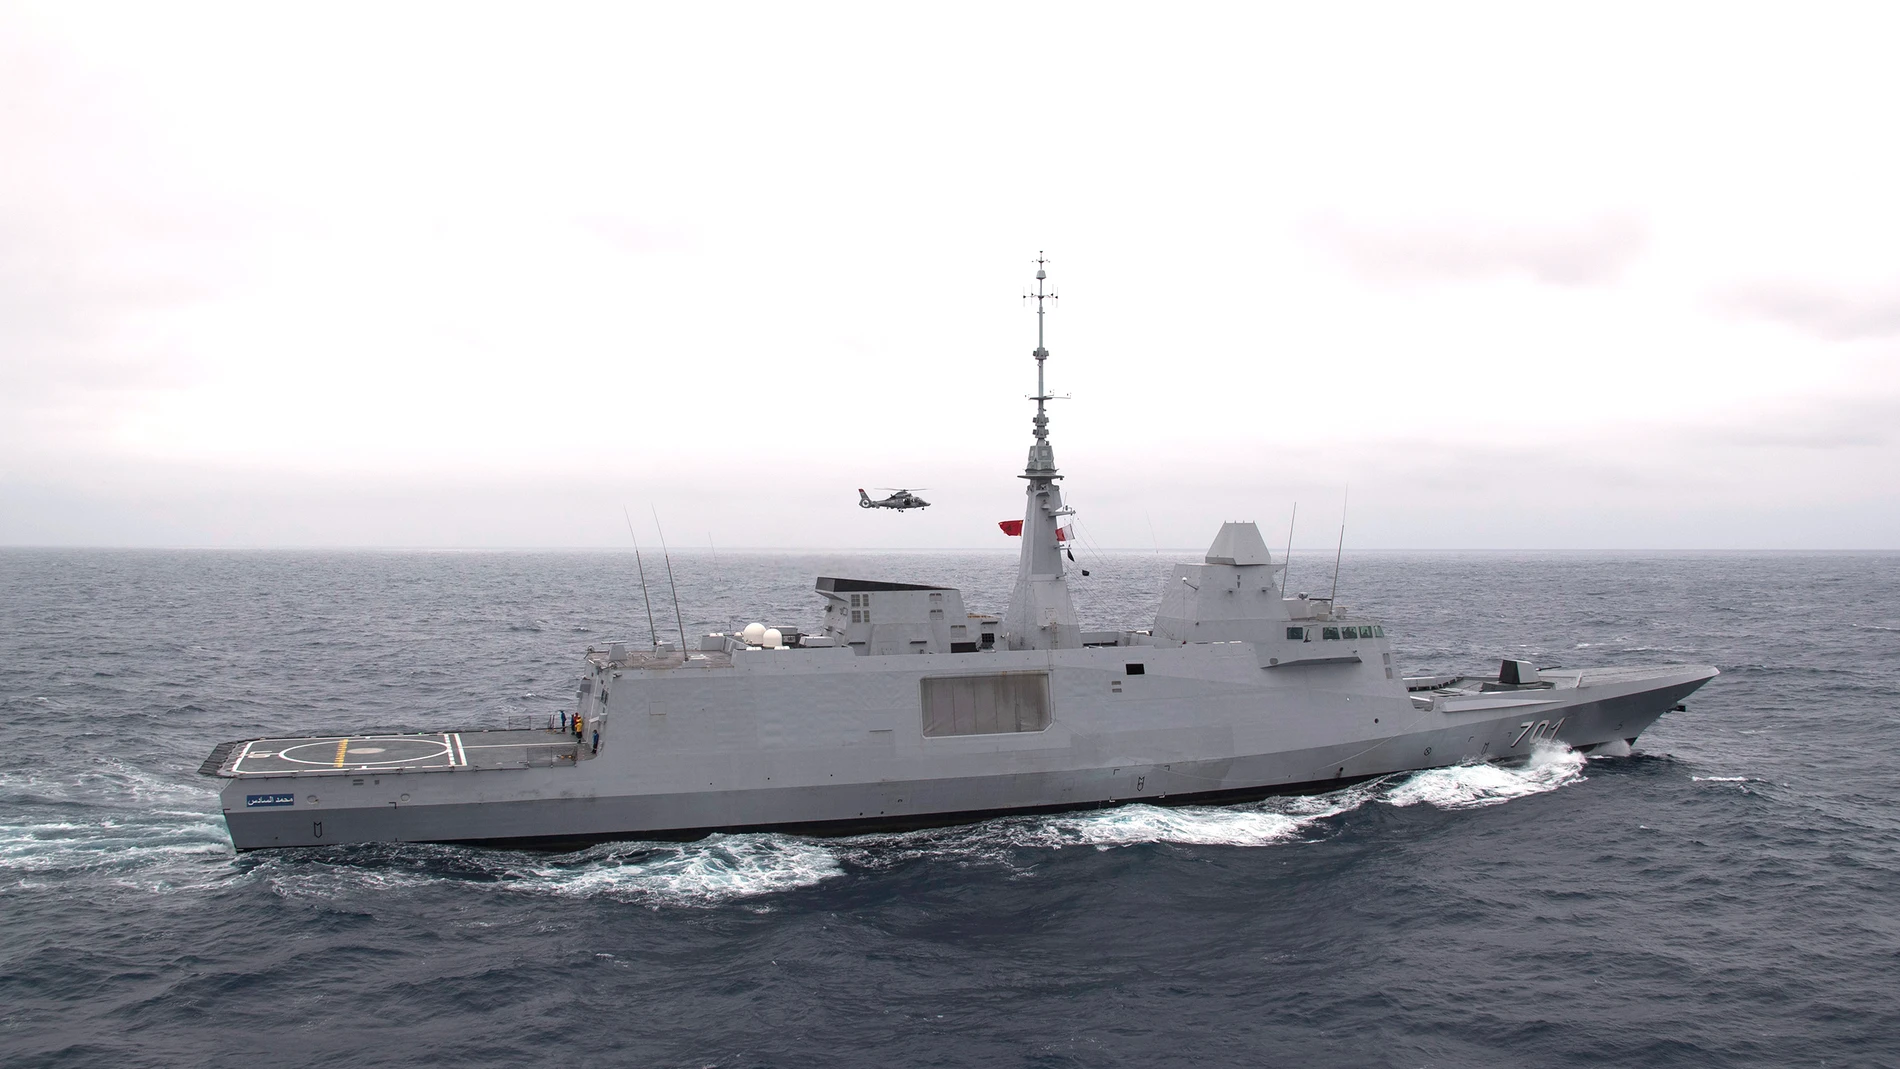 Imagen de la fragata Mohamed VI, buque insignia de la Marina Real de Marruecos